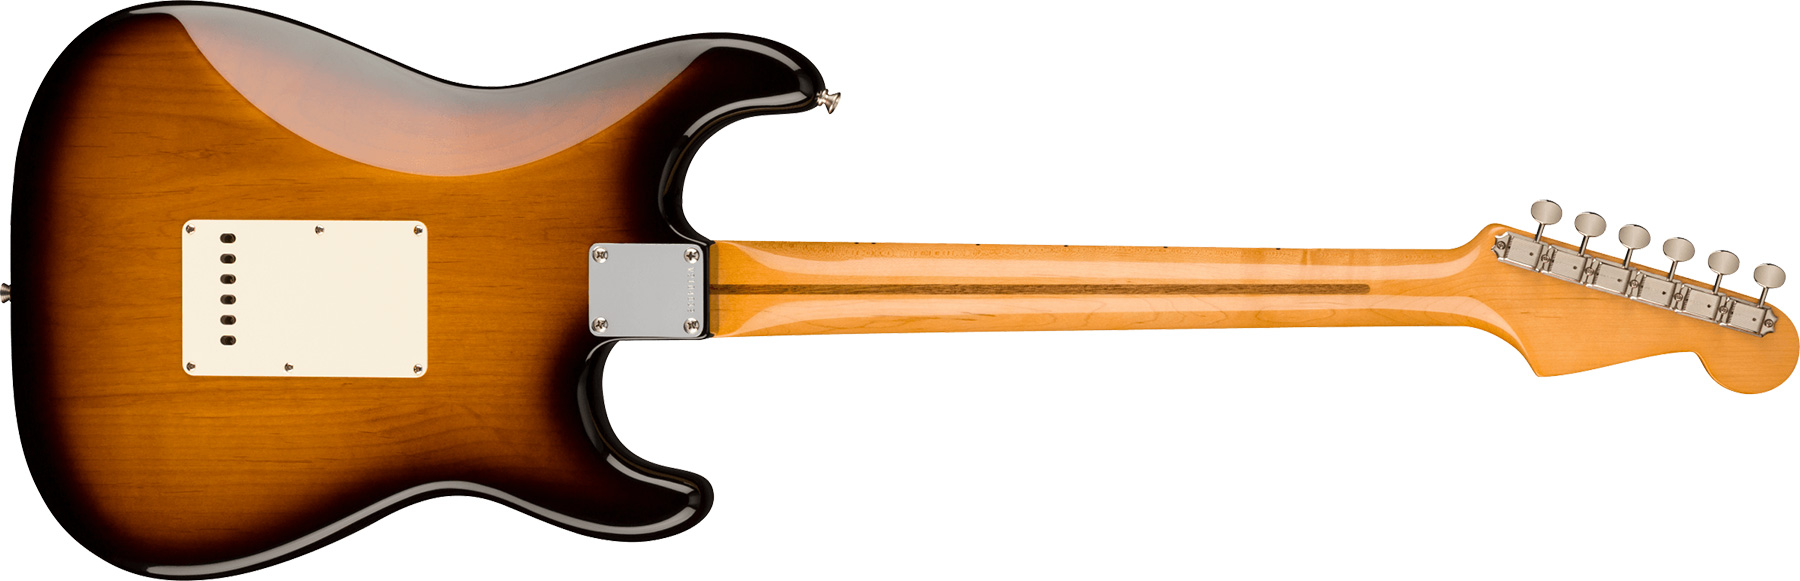 Fender Strat 1957 American Vintage Ii Lh Gaucher Usa 3s Trem Mn - 2-color Sunburst - Linkshandige elektrische gitaar - Variation 1